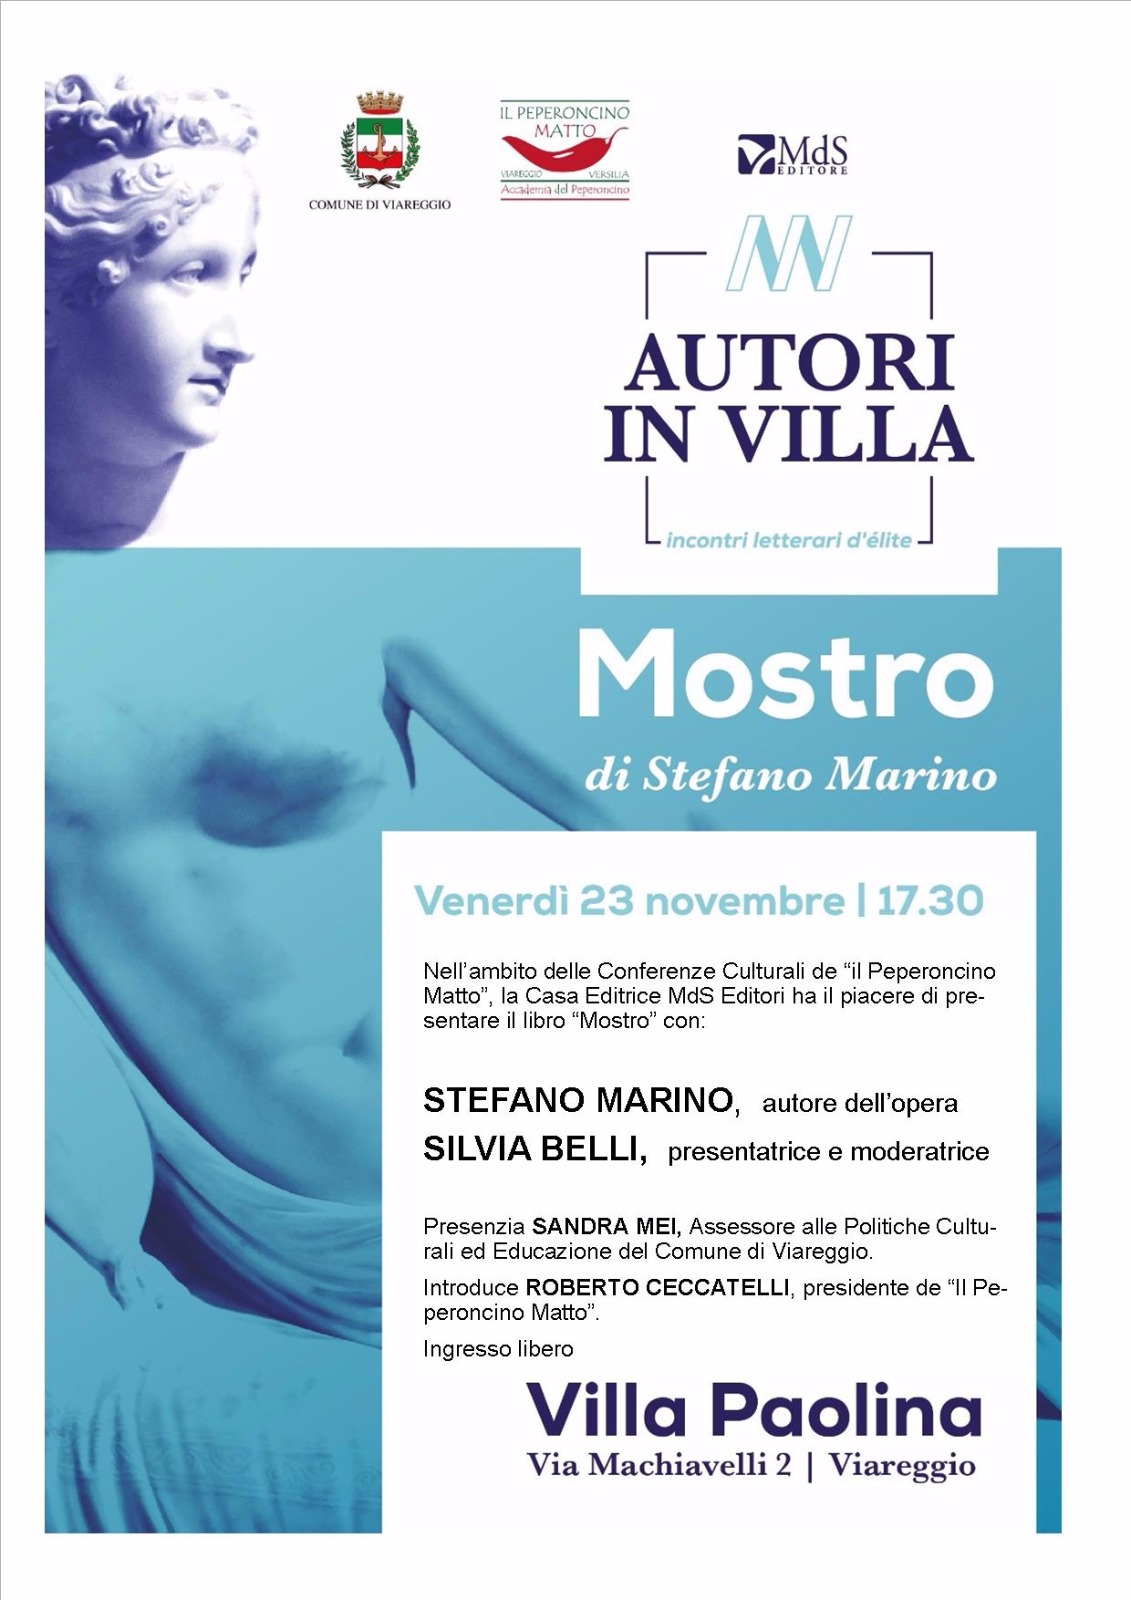 Autori in villa, “Il mostro”: Stefano Marino presenta il suo libro